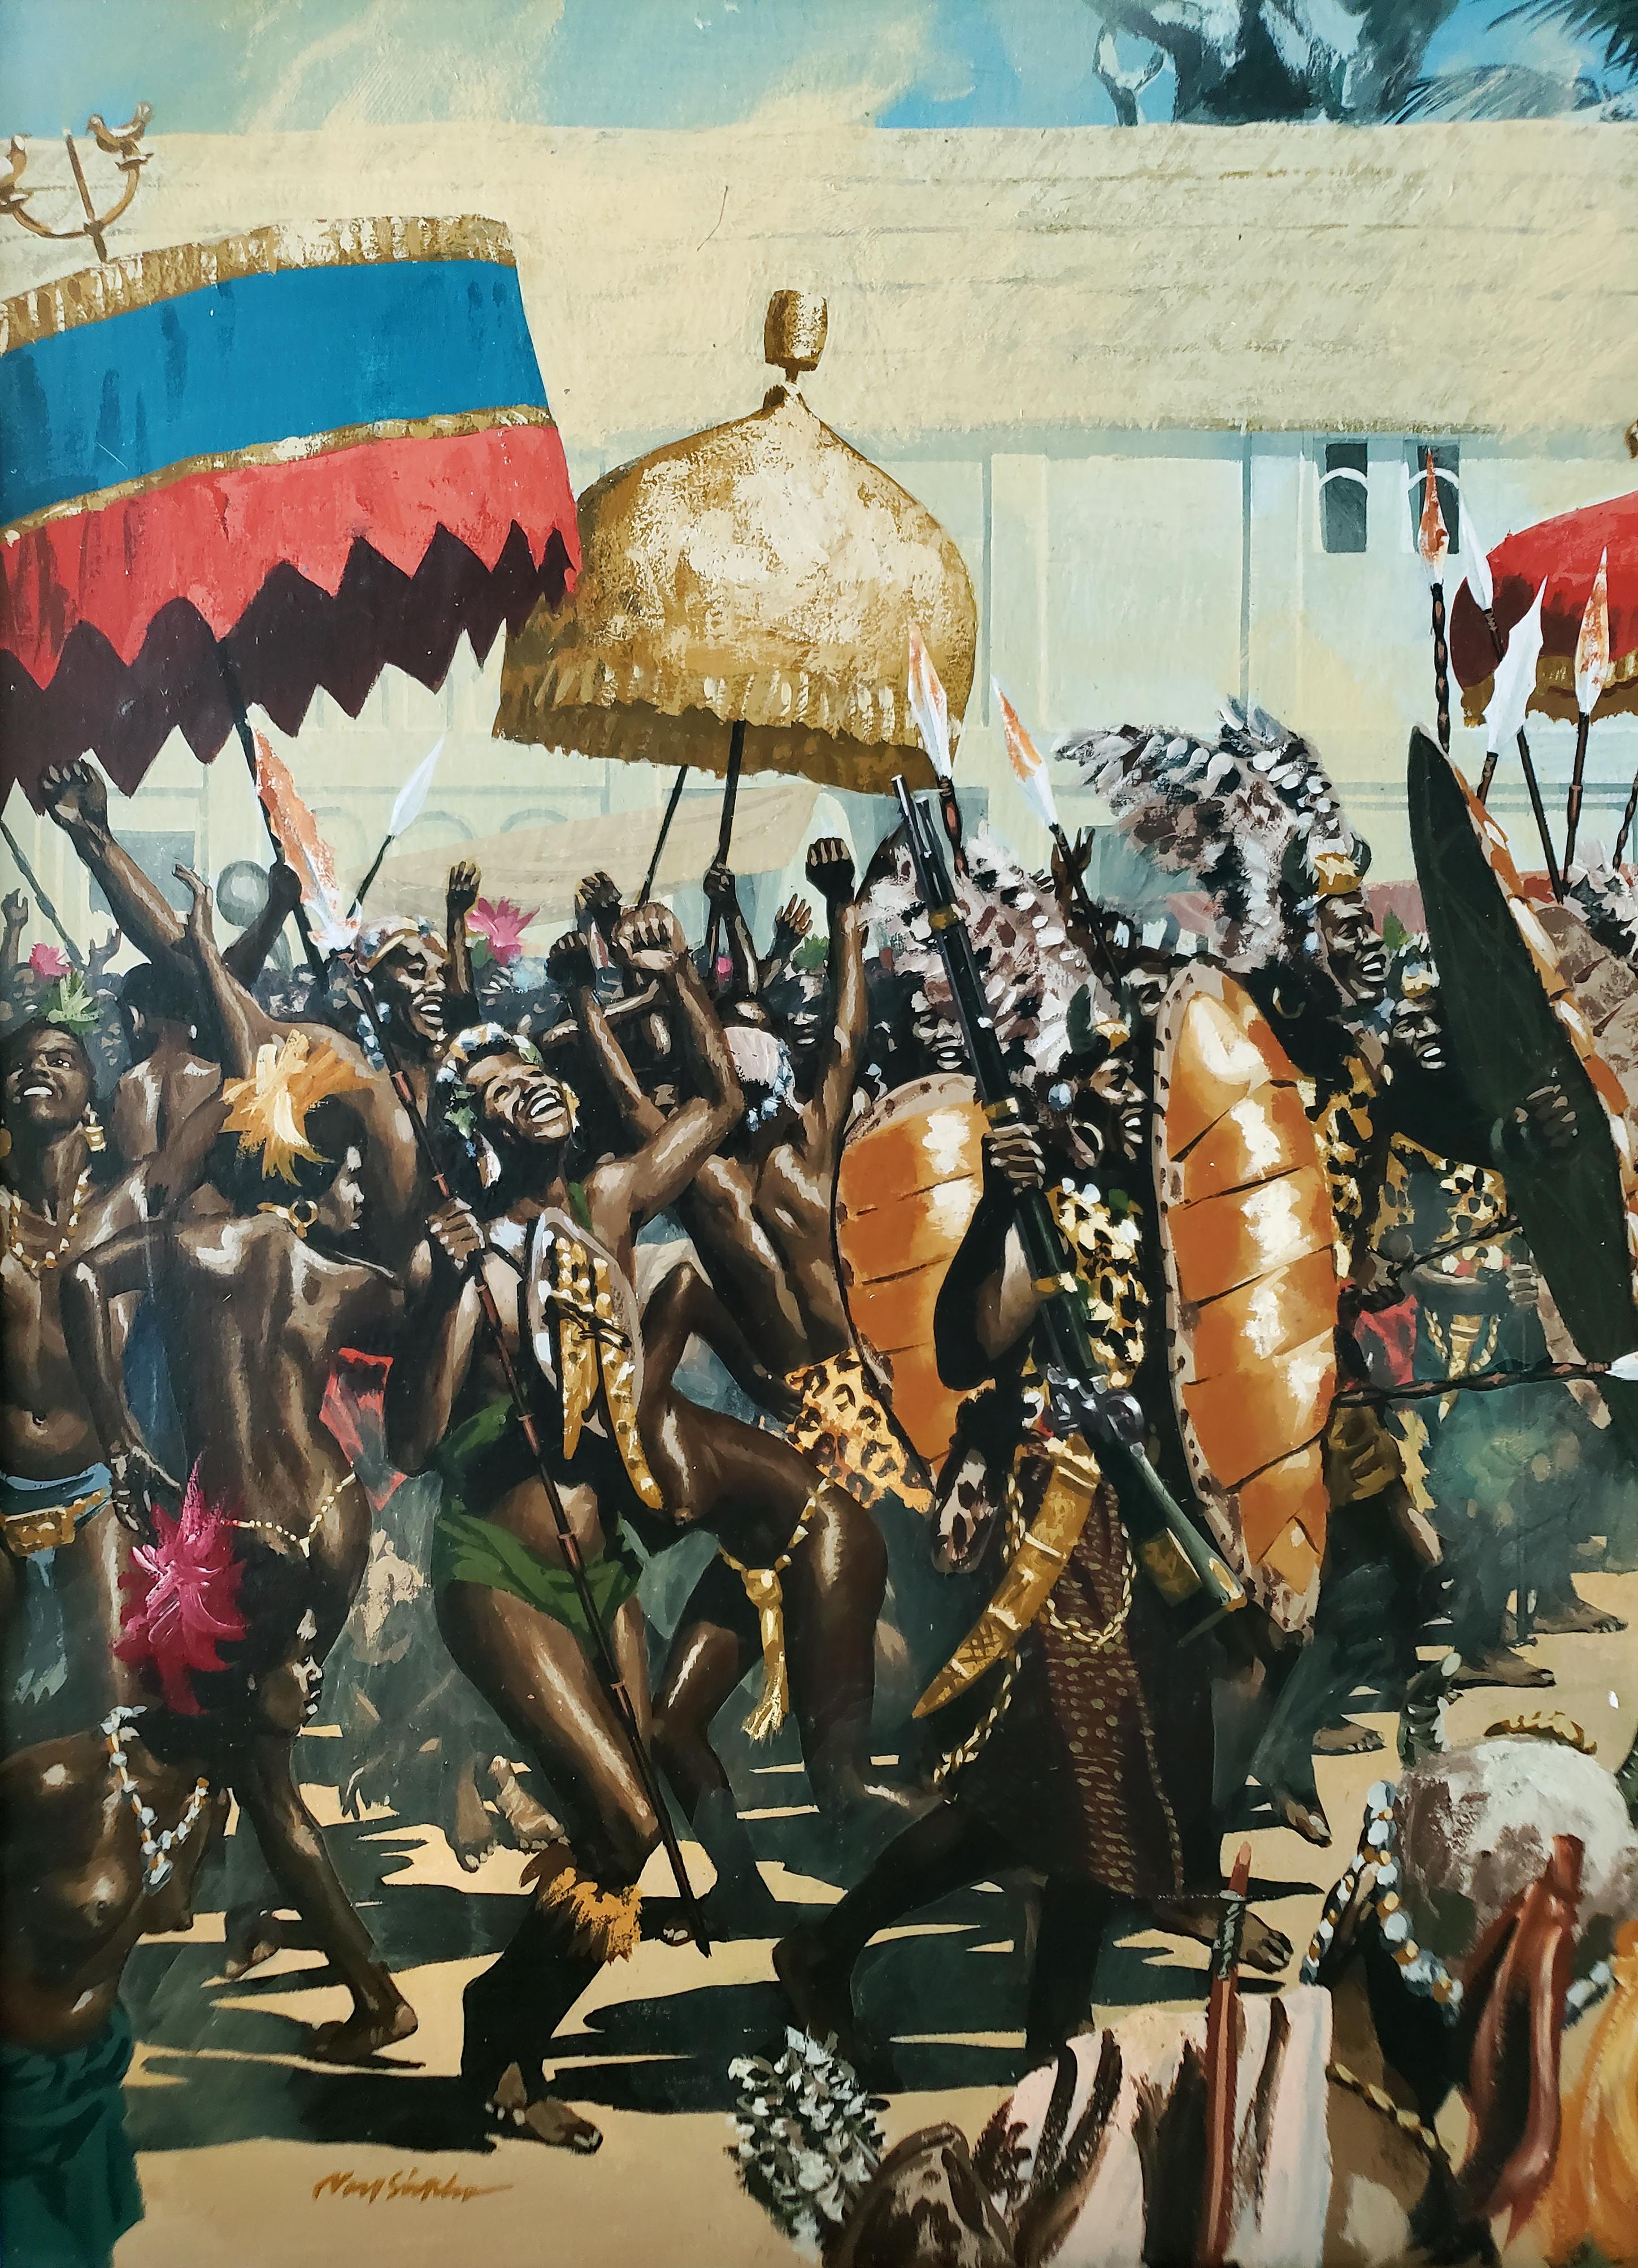 Komplexes und detailliertes Historiengemälde in epischem Maßstab eines afrikanischen Stammesfestes mit einem aufblickenden König. Das Werk weist eine Fülle von Details auf, vom Stil und Charakter der Menschen bis hin zu den prächtigen Regenschirmen,